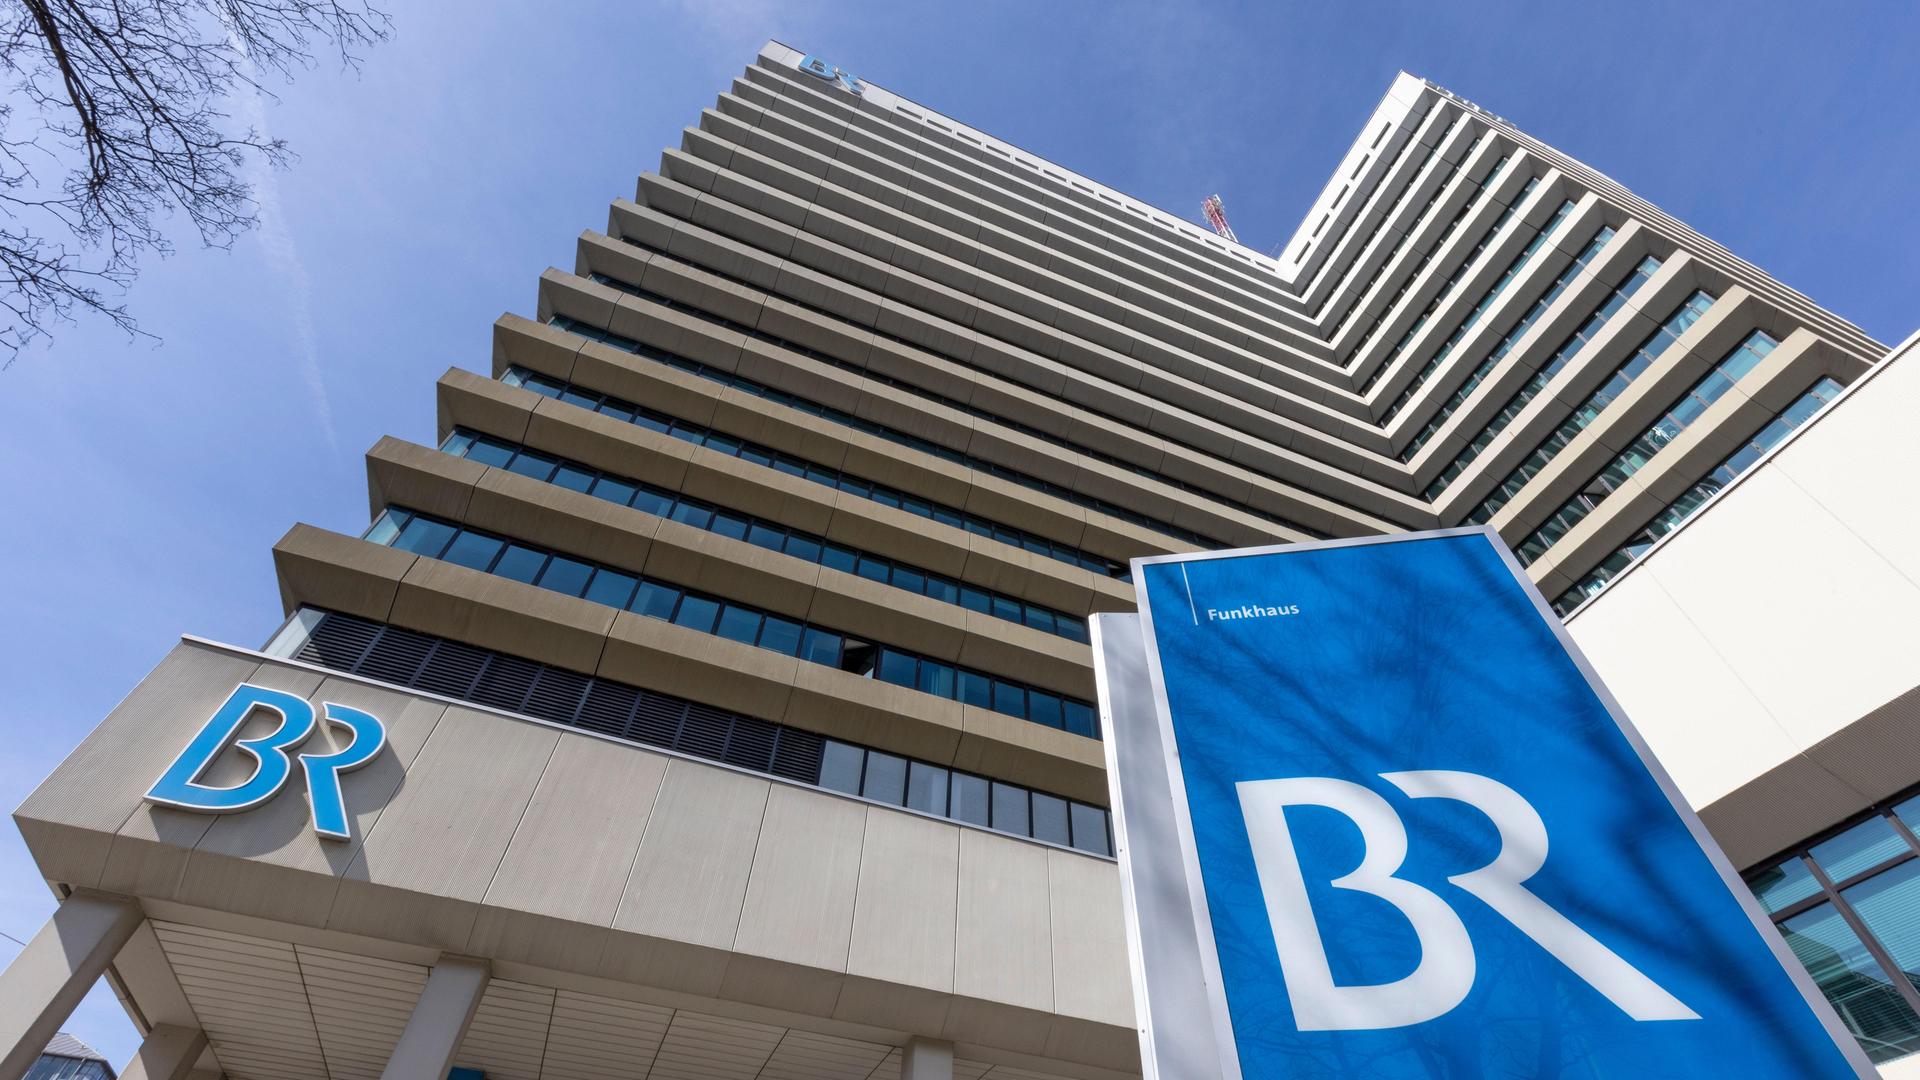 Vor dem Münchner Funkhaus des Bayerischen Rundfunk steht auf einem blauen Schild das Logo des Senders mit den Buchstaben "BR".